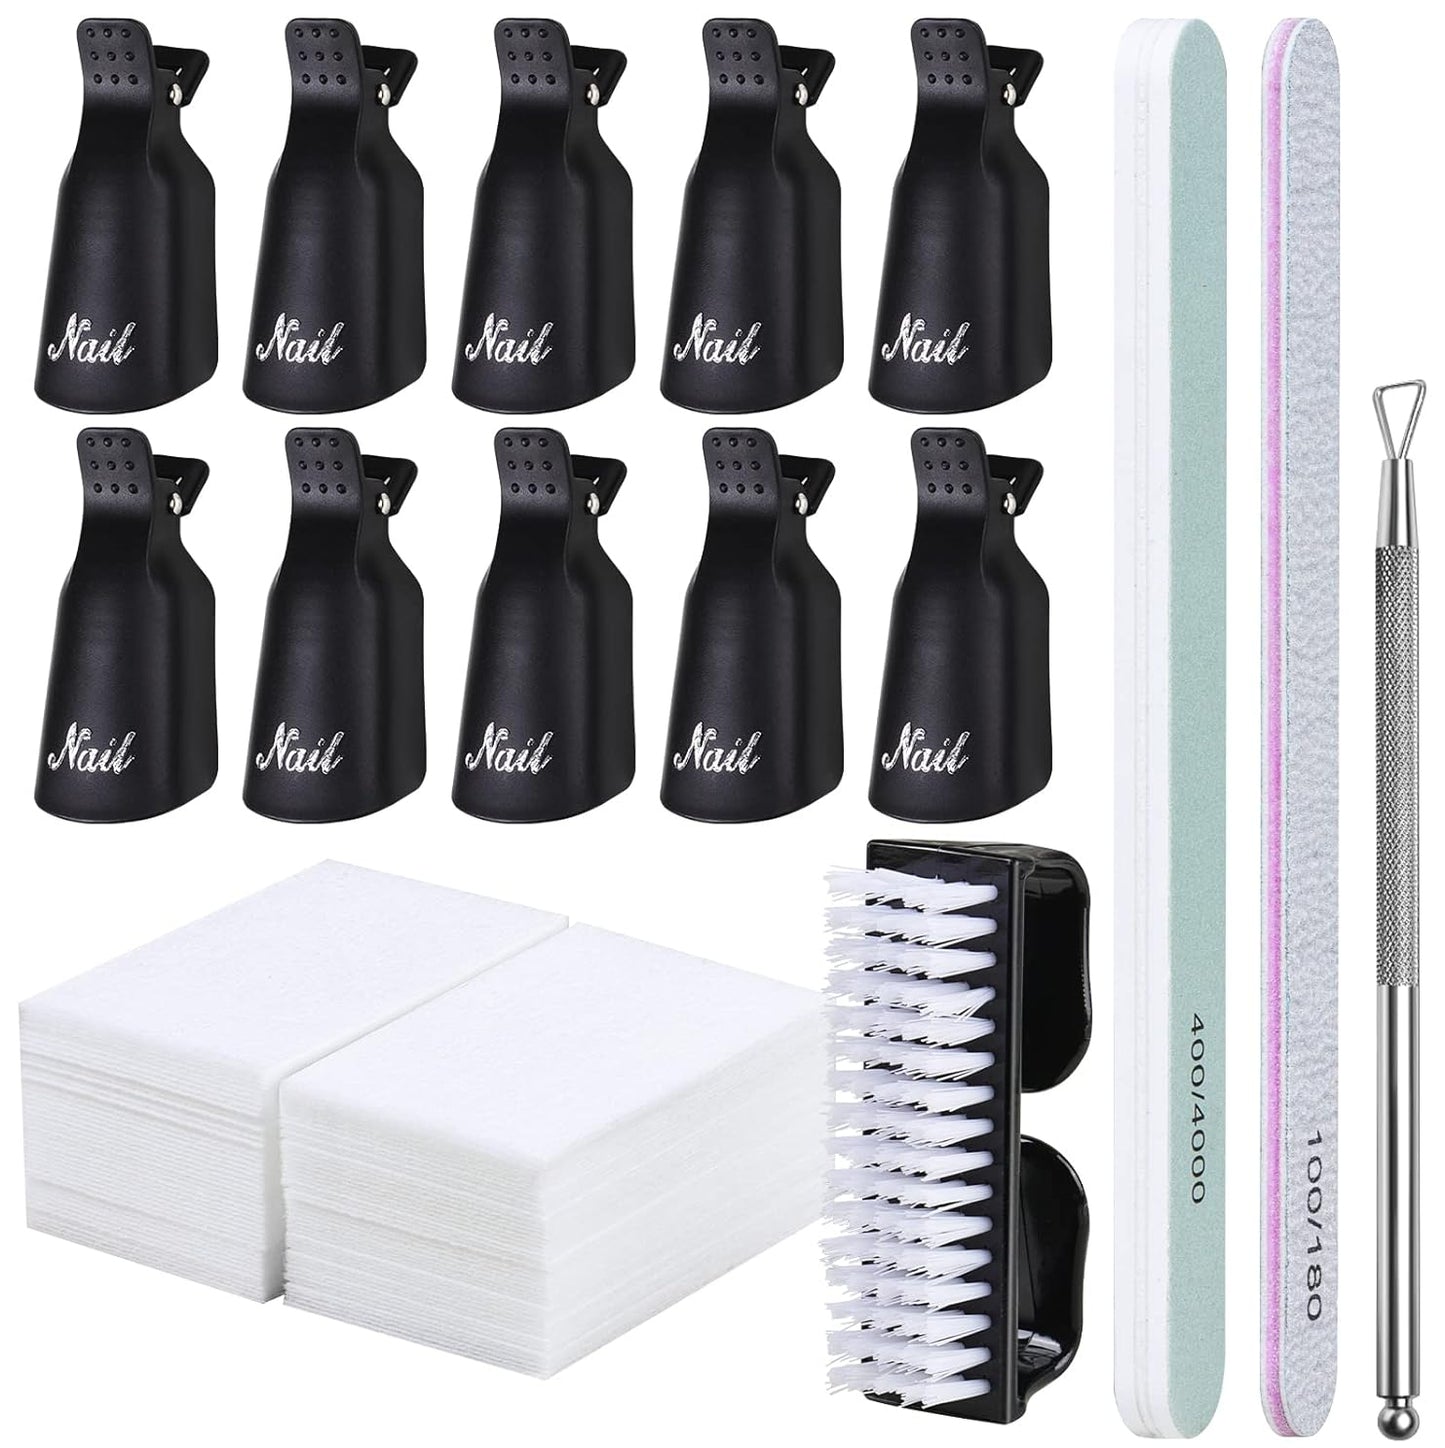 Gleevia Nail Gel Remover Tools Kit with Nail Remover Clips, Nail Remover Pads, Nail Brushes, Nail File Buffer, Cuticle Peeler